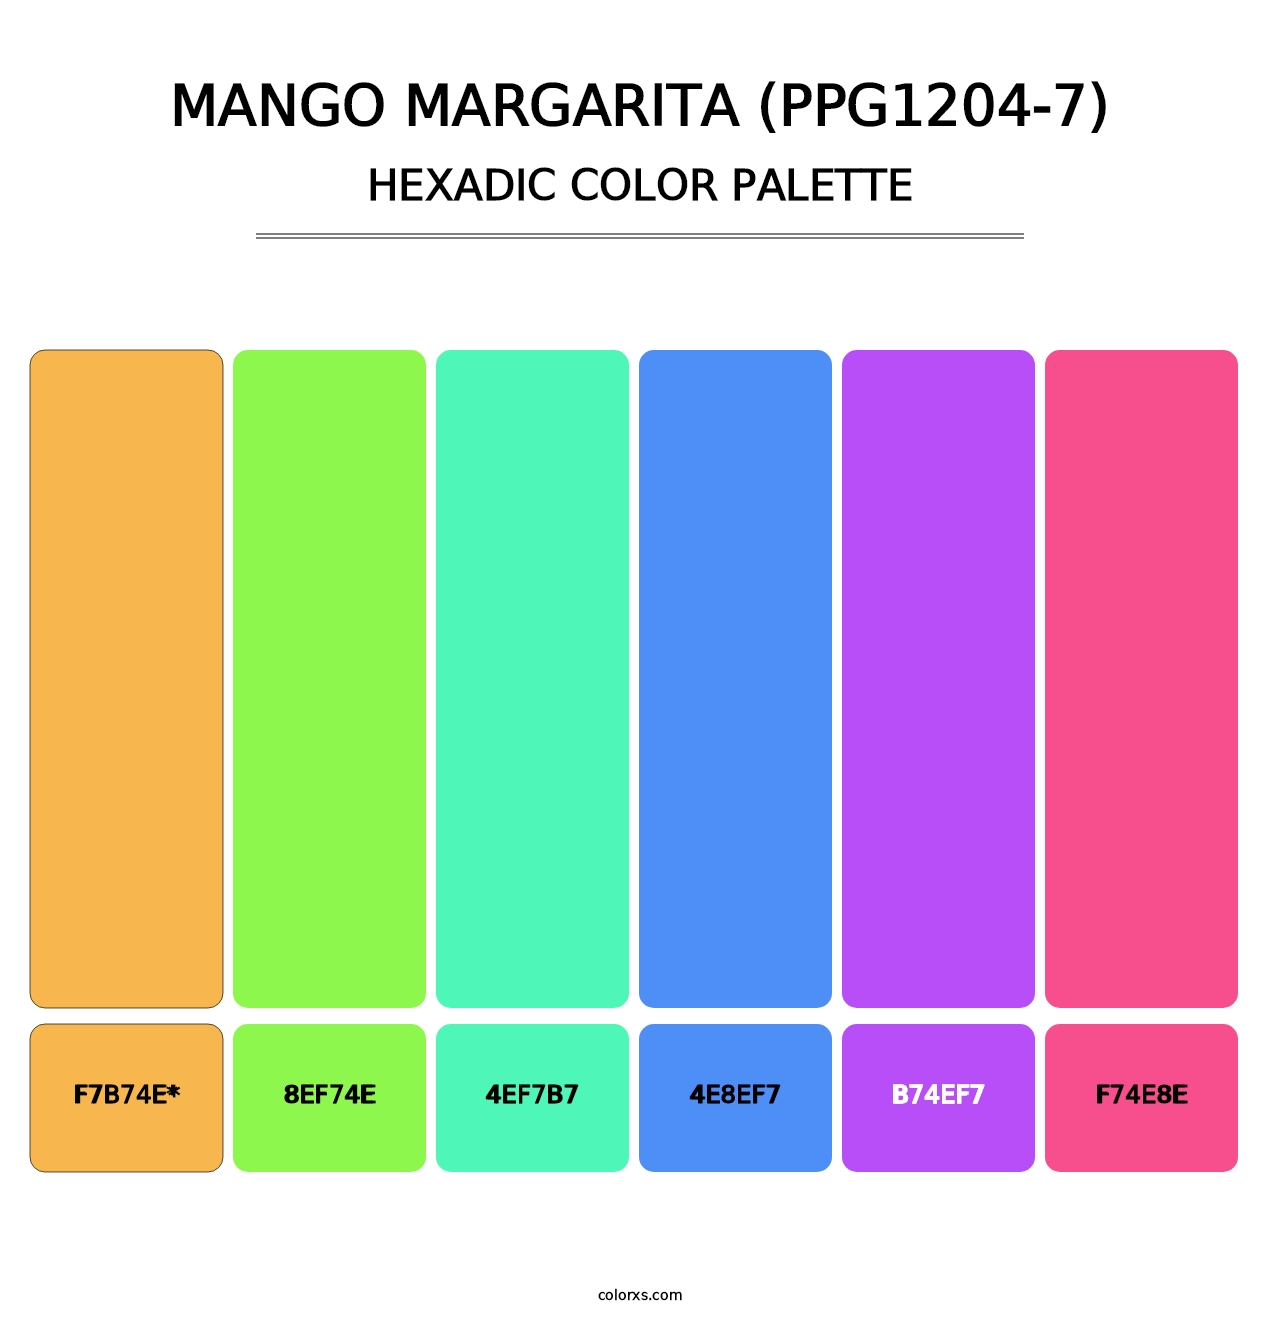 Mango Margarita (PPG1204-7) - Hexadic Color Palette